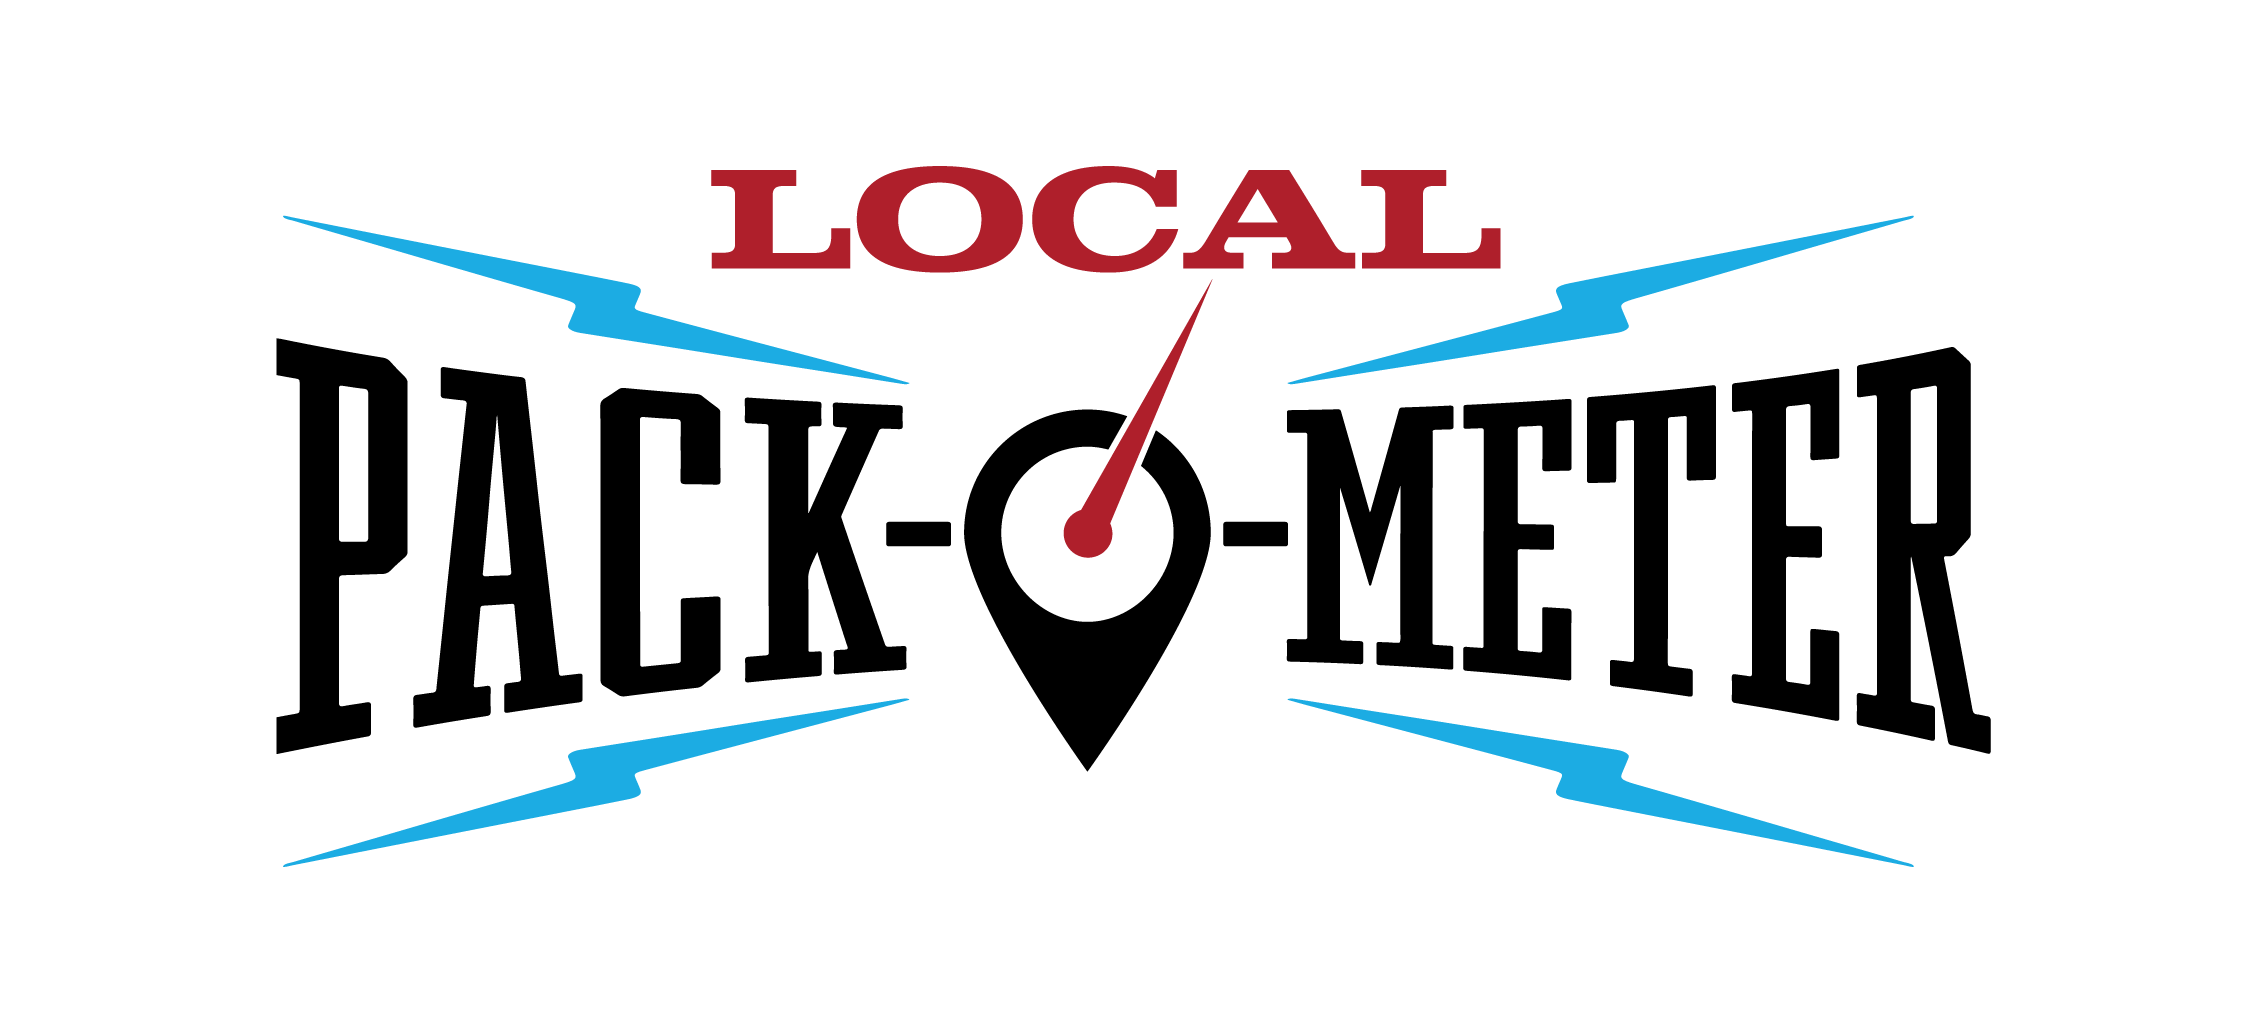 Local Pack-O-Meter Logo